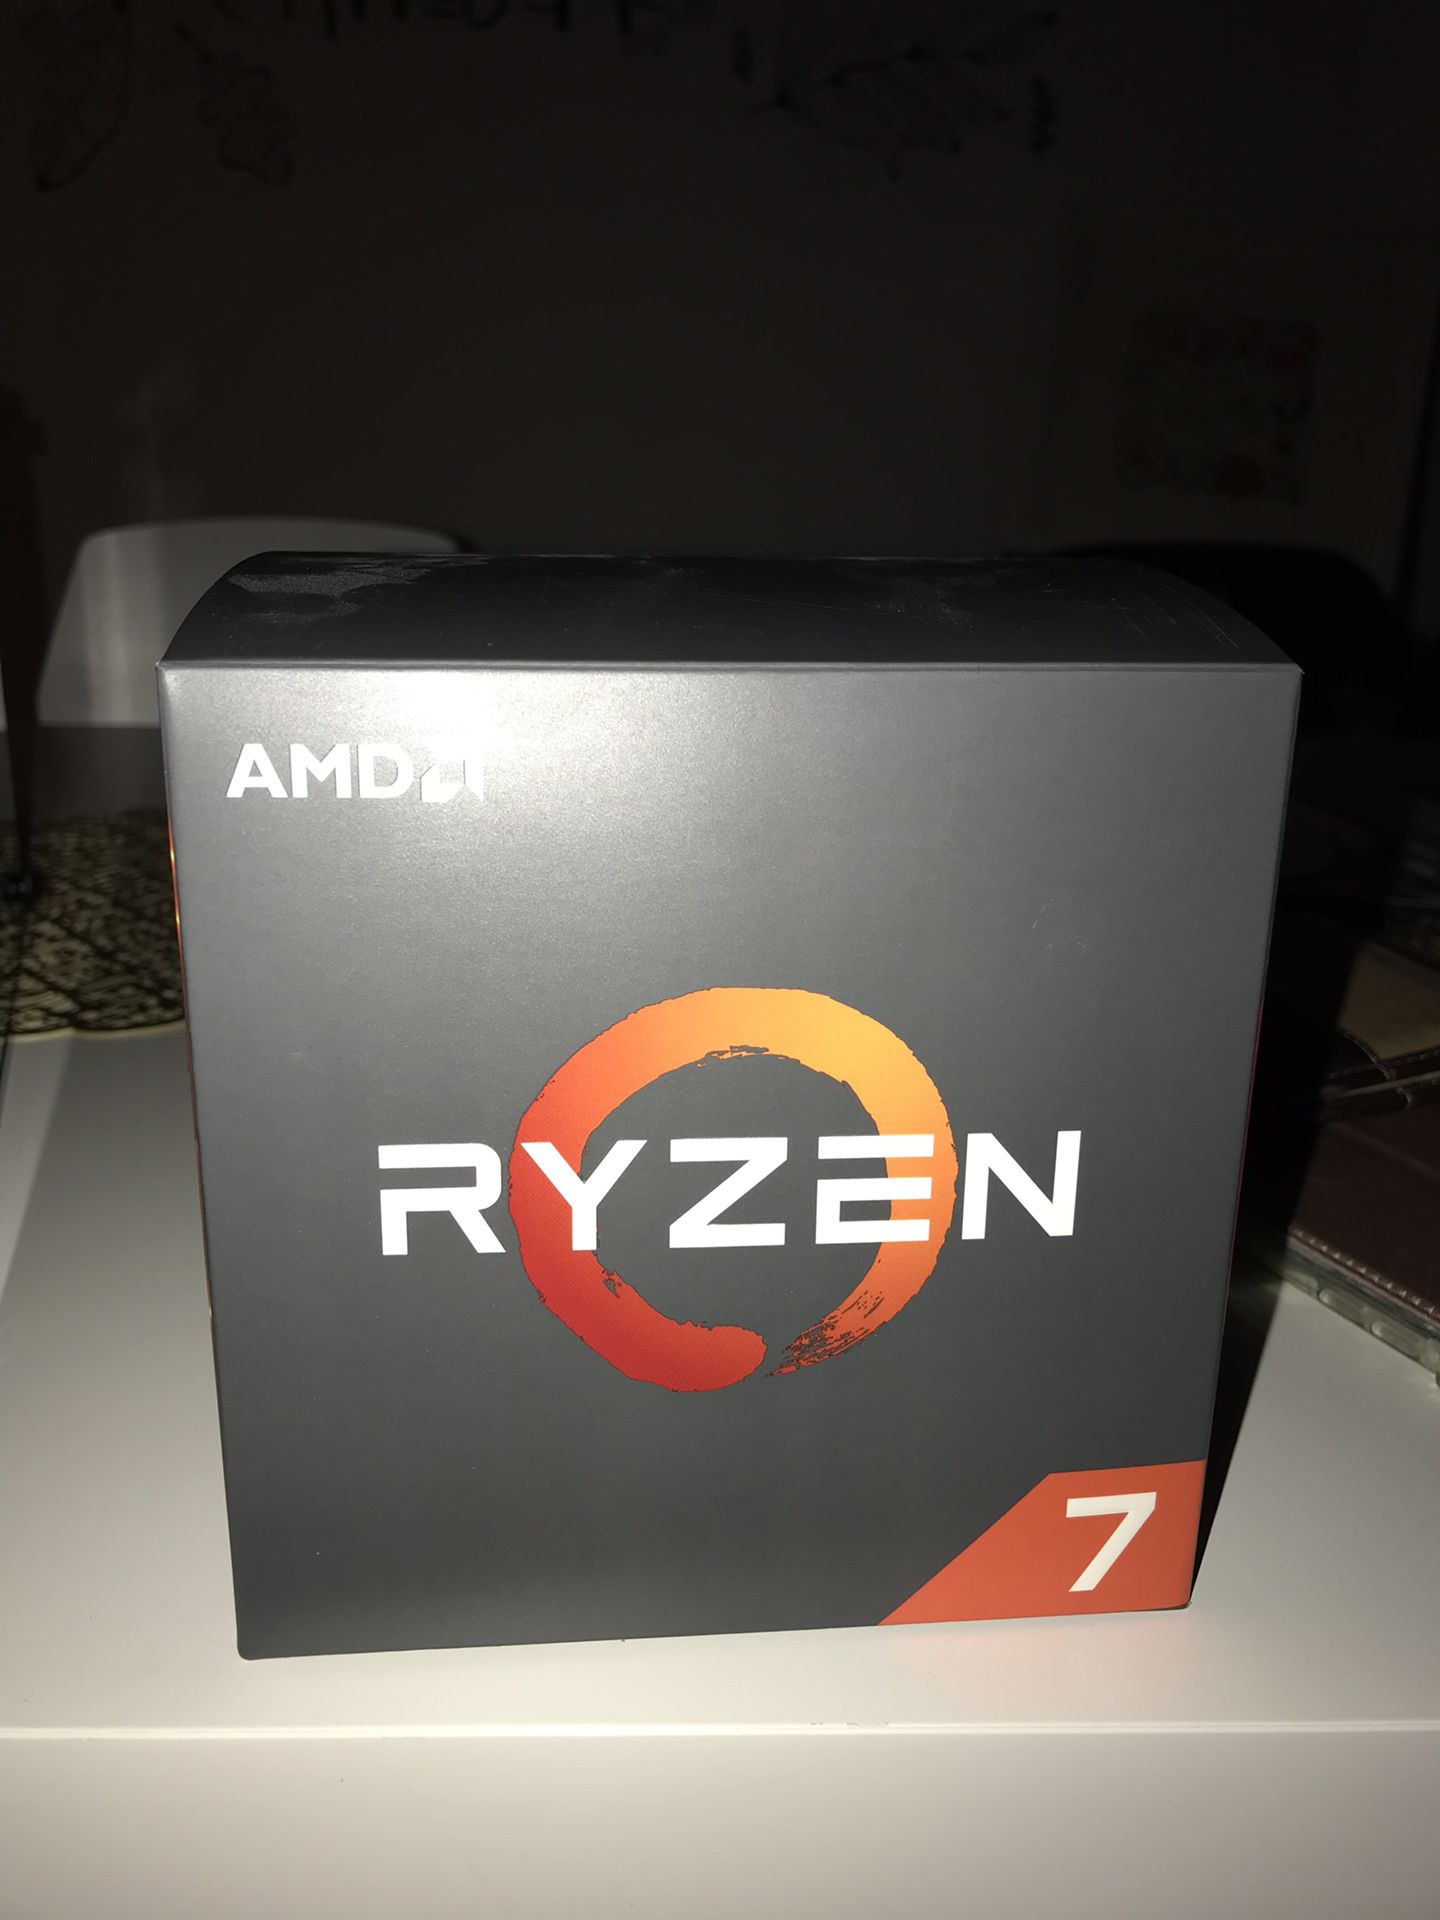 AMD Ryzen 7 2700x processor with Wrath RGB Cooler